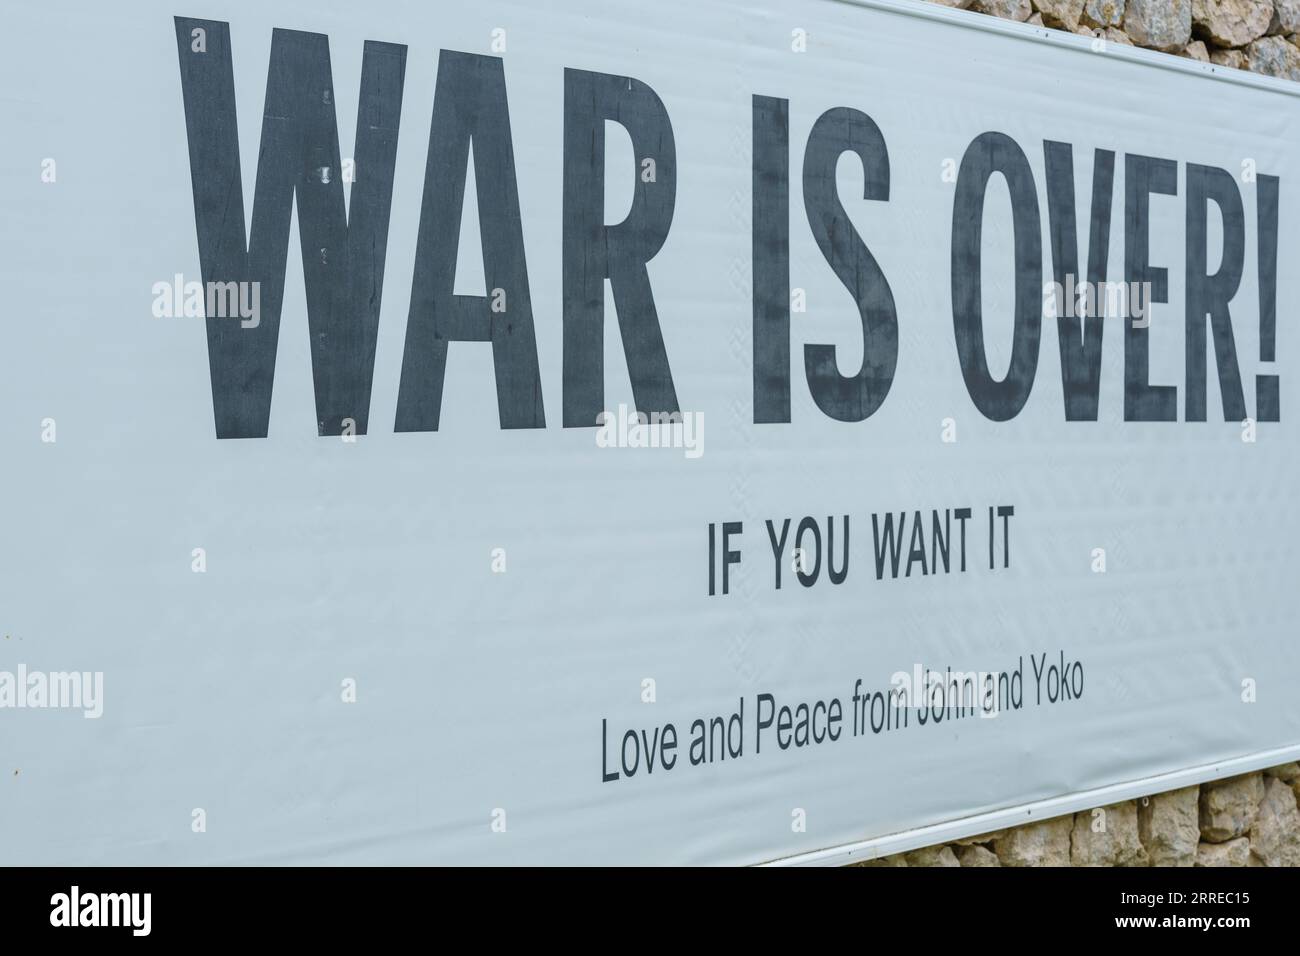 Yoko Ono, War is Over! (1969)